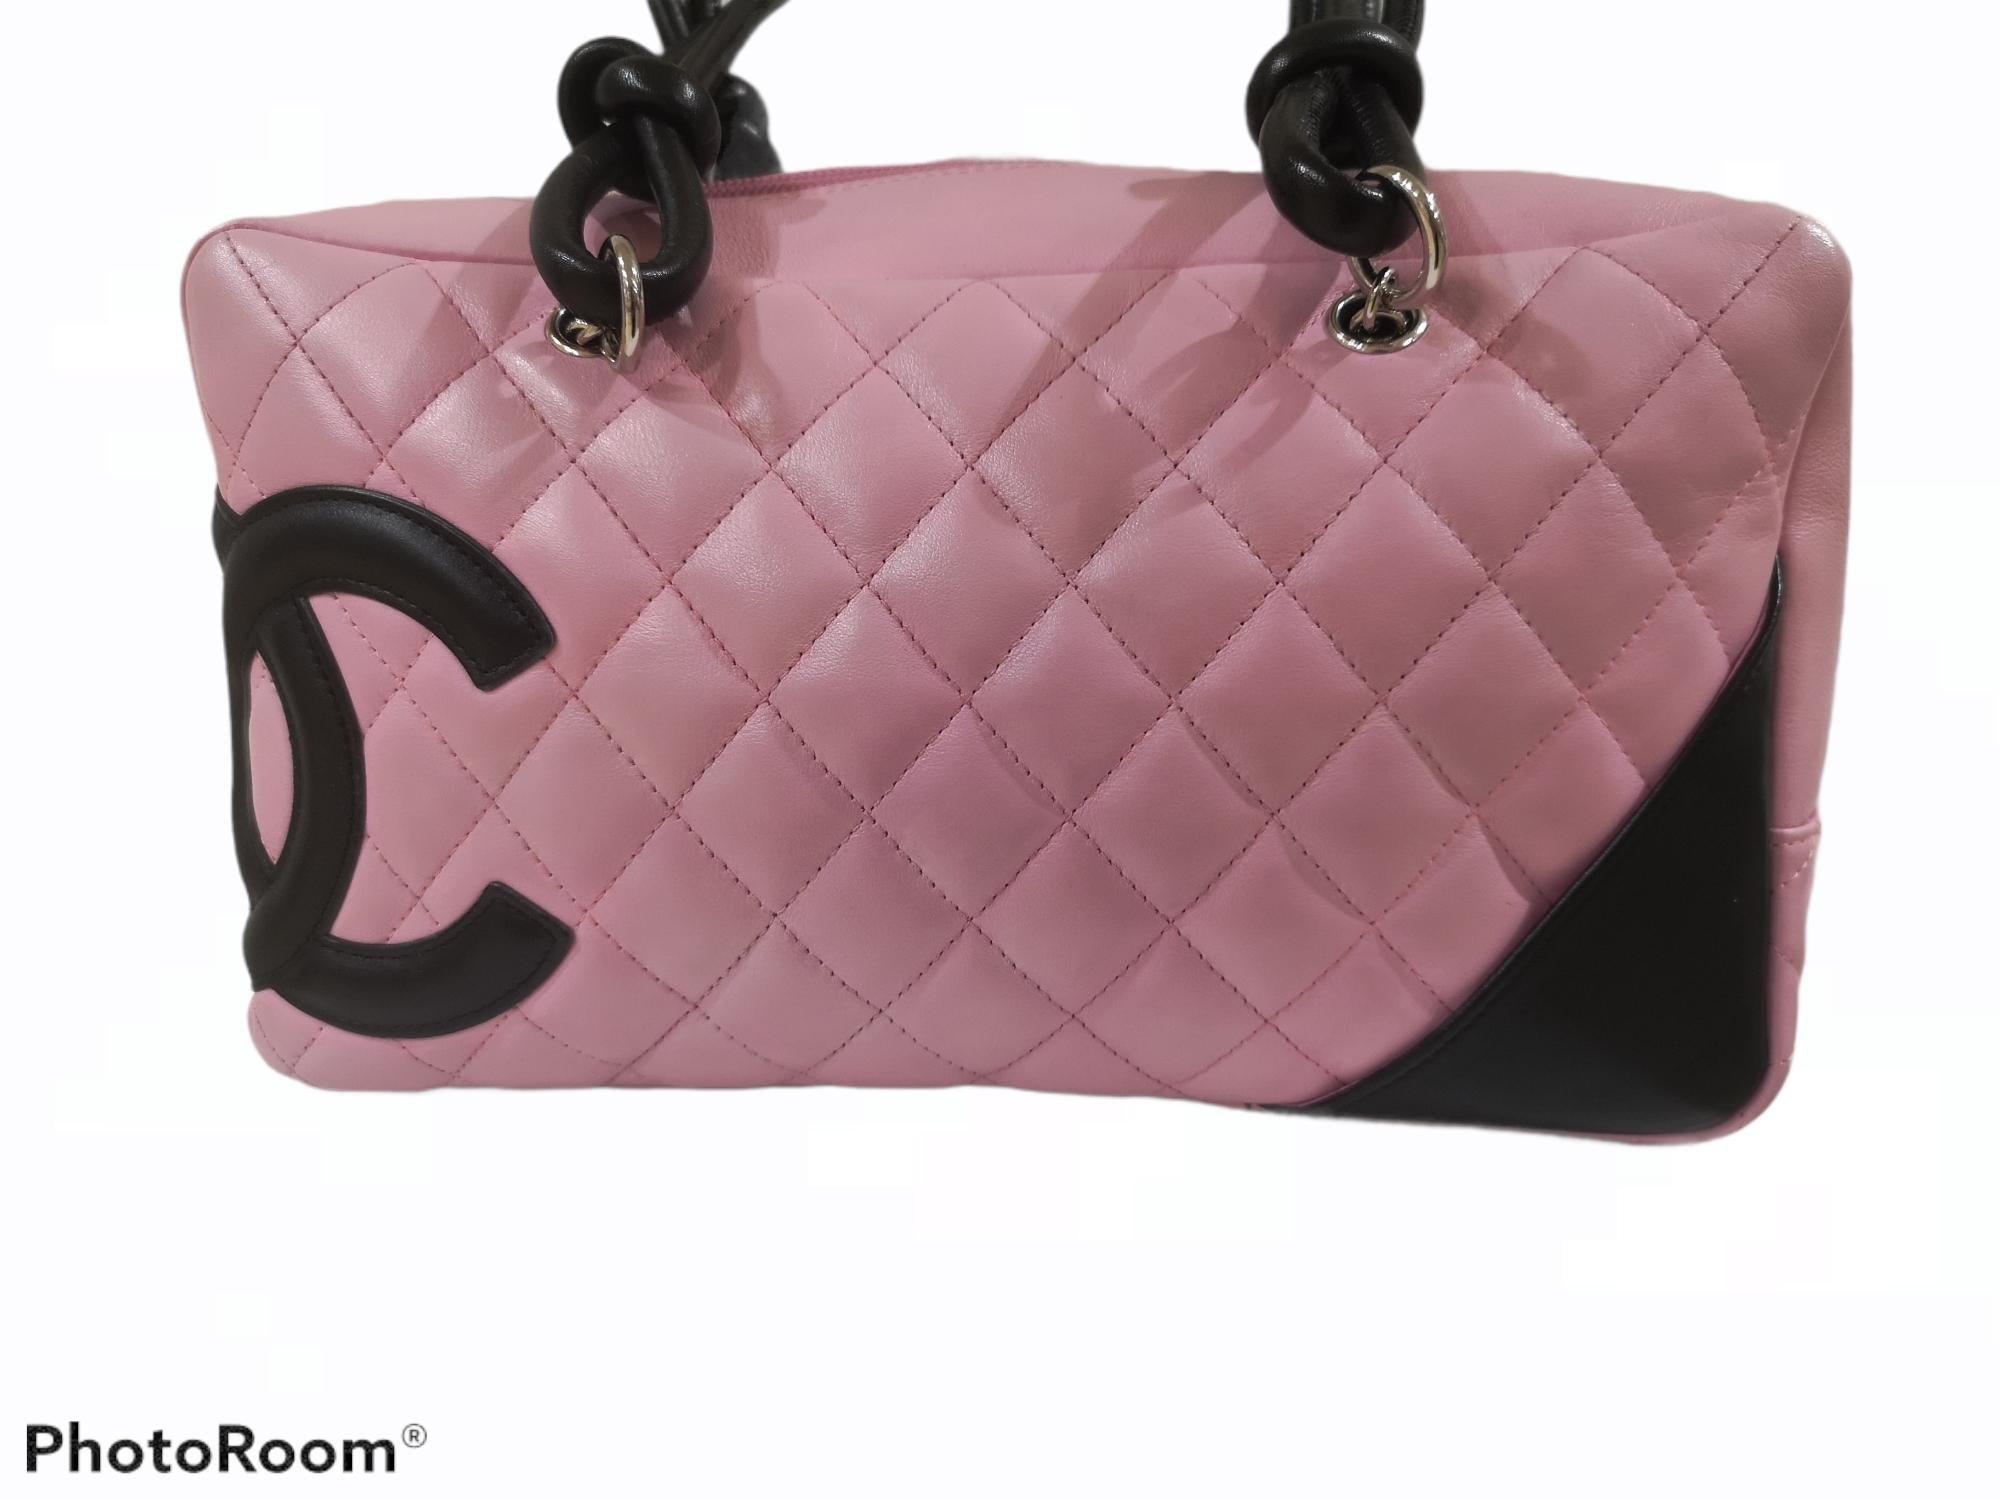 Chanel pink black quilter leather Cambon bowler tote bag / shoulder bag
Measurements: 28 * 14 cm, 10 cm depth